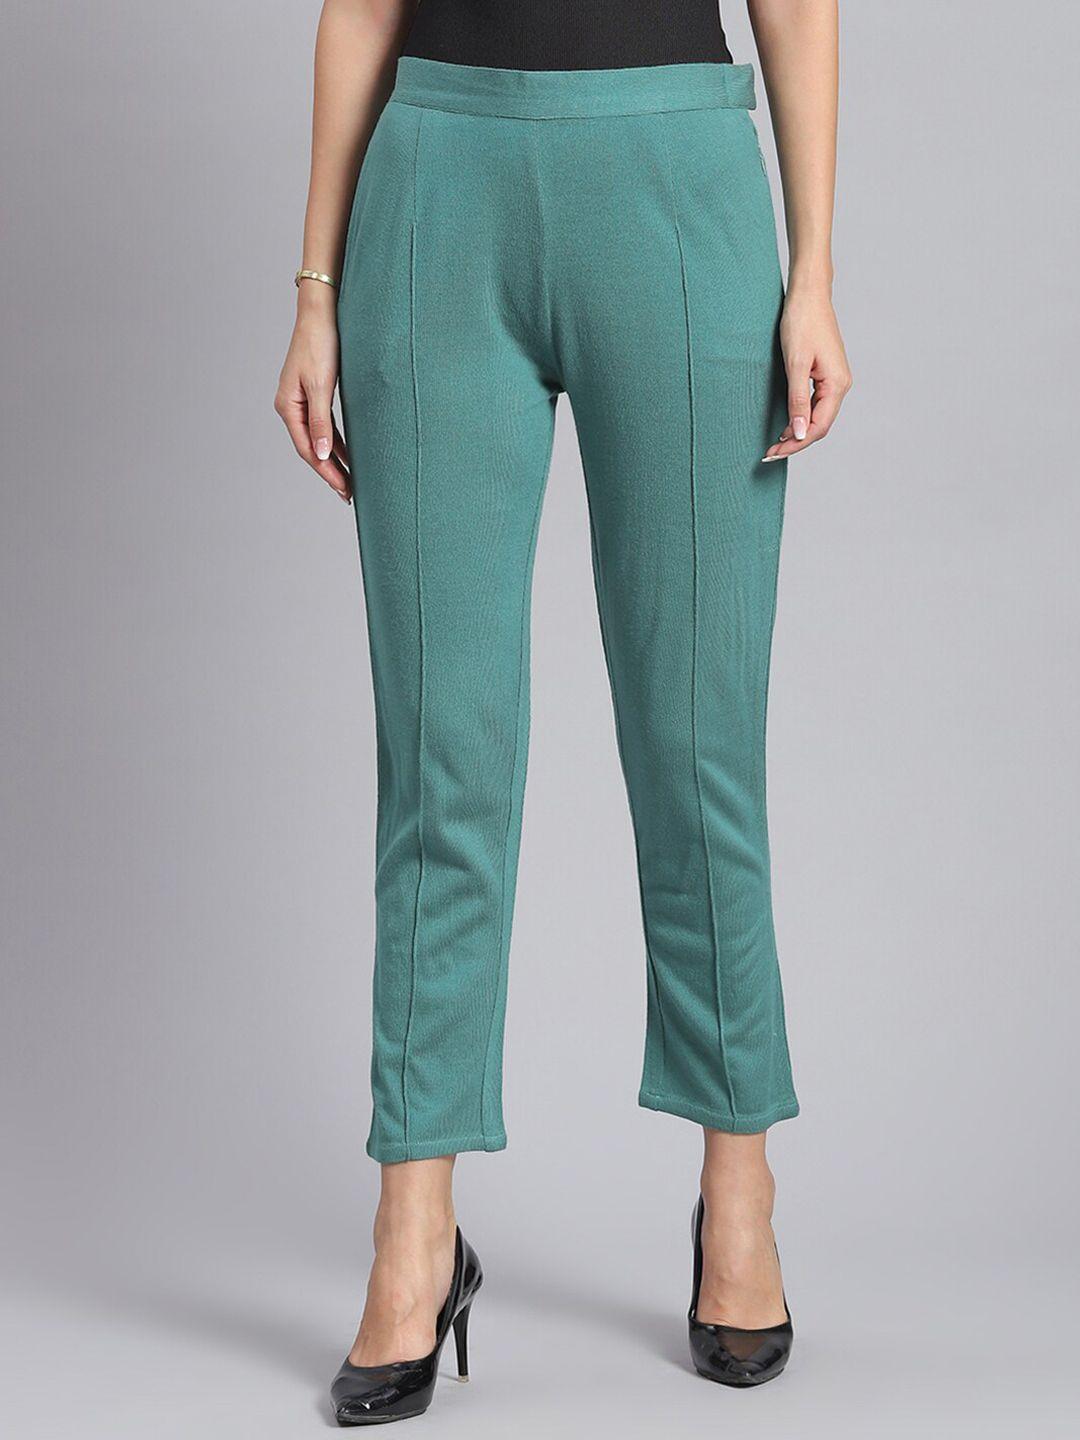 monte carlo women self design trouser